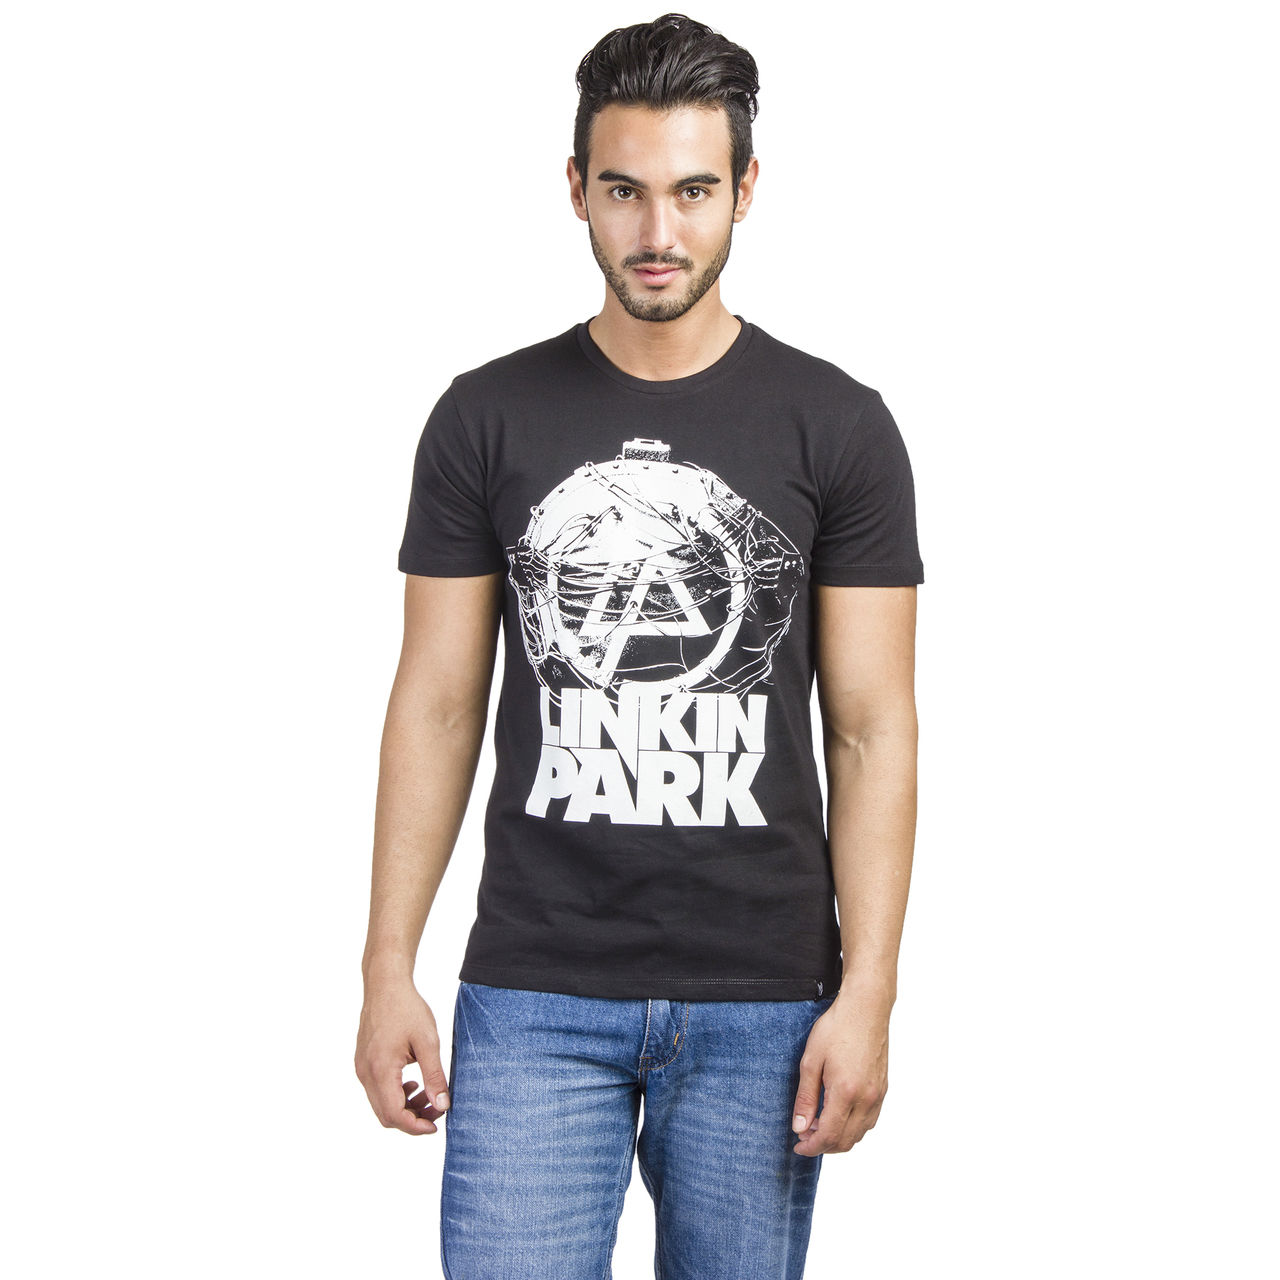 Linkin Park T-Shirt MT0BLP05A,BLACK